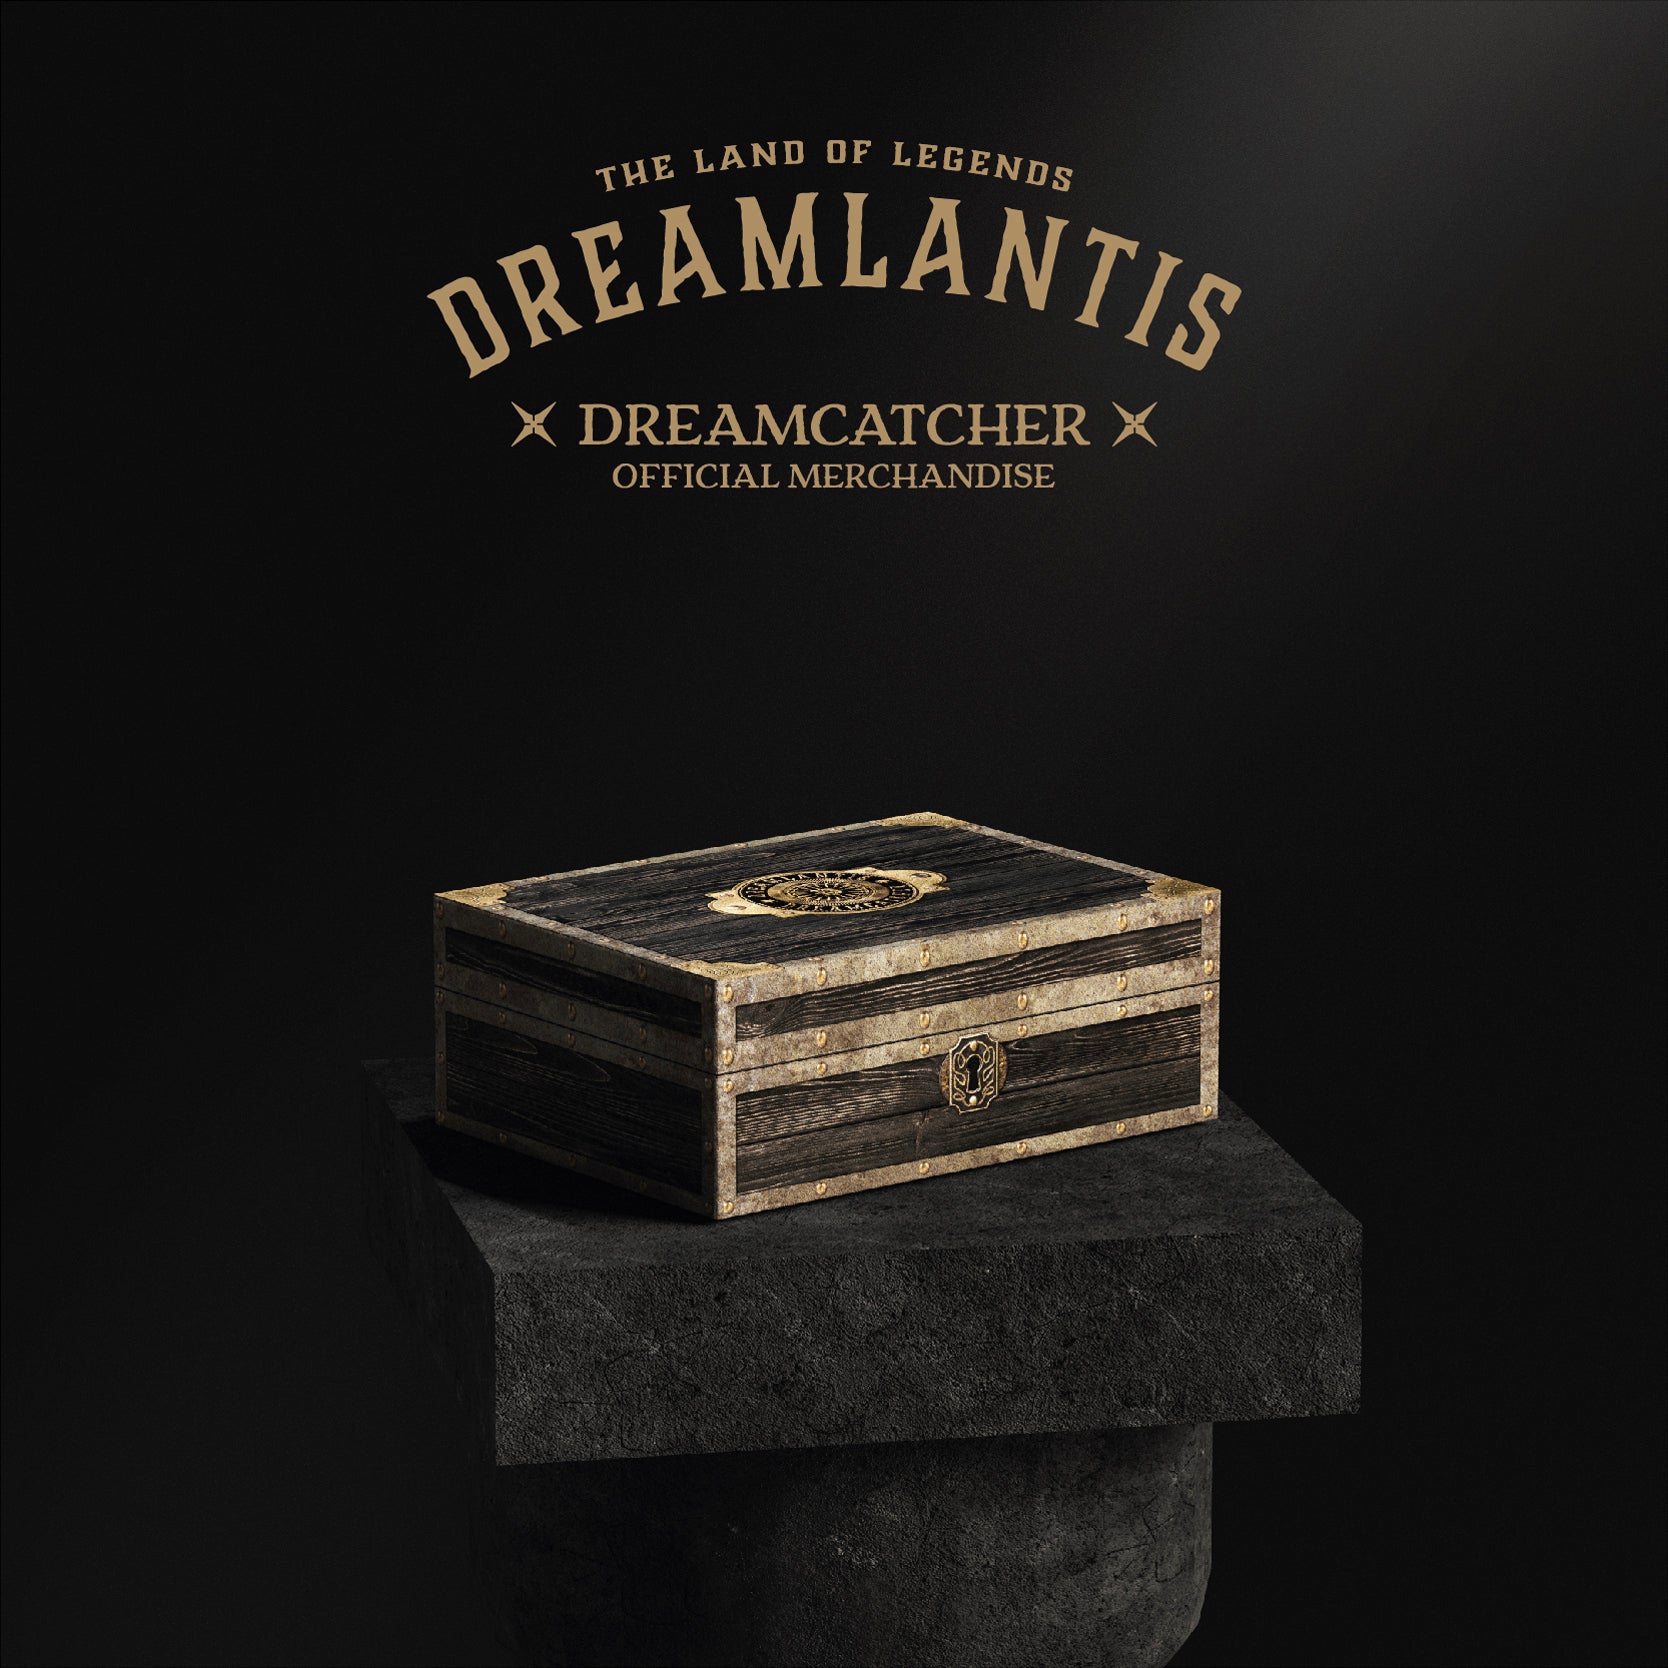 DREAMCATCHER OFFICIAL MERCHANDISE 'DREAMLANTIS' COVER